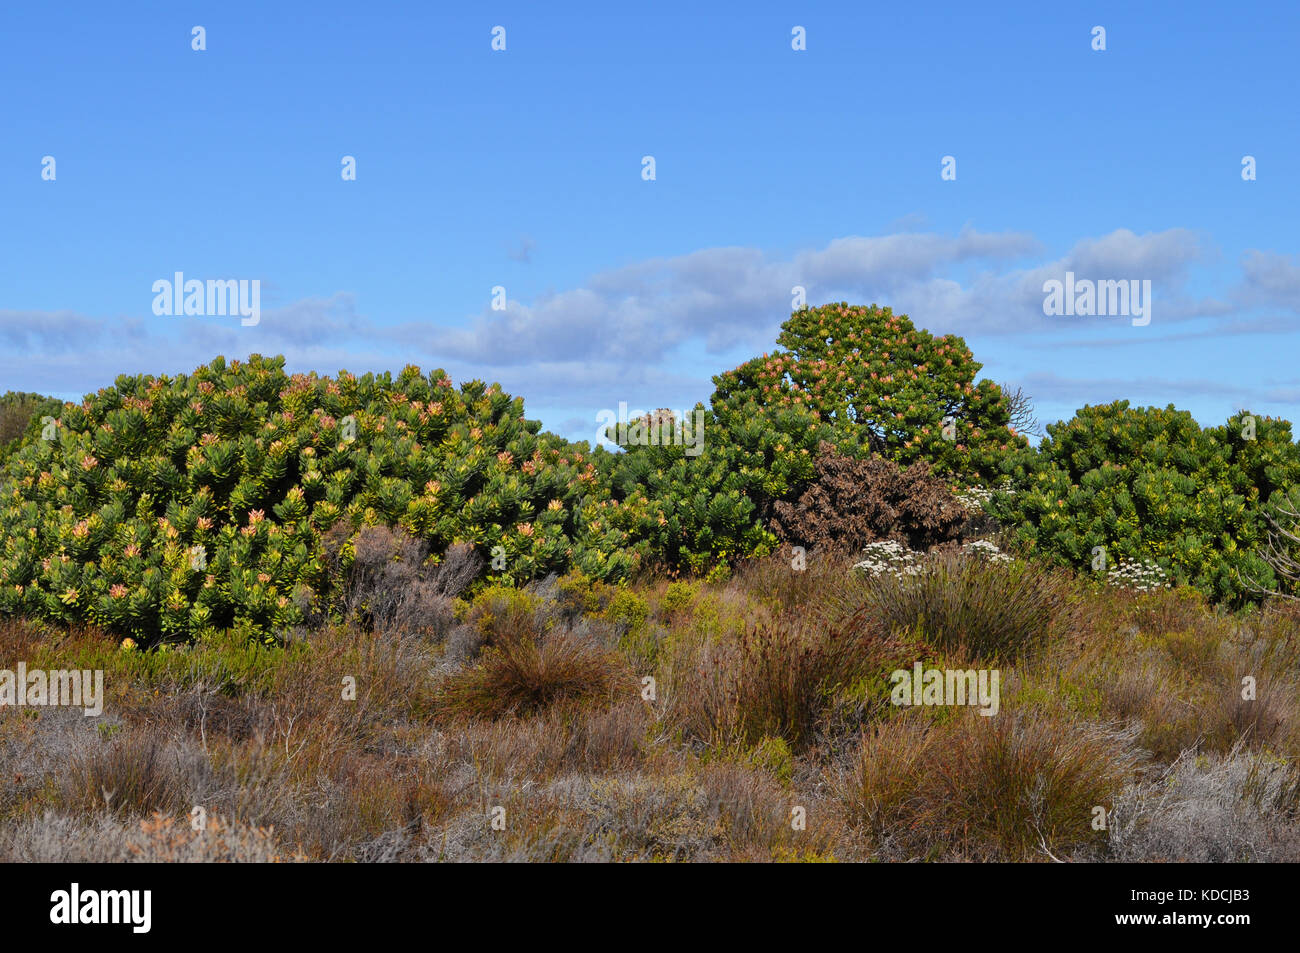 Vegetación de fynbos en la península del Cabo, cerca de Ciudad del Cabo, Sudáfrica Foto de stock